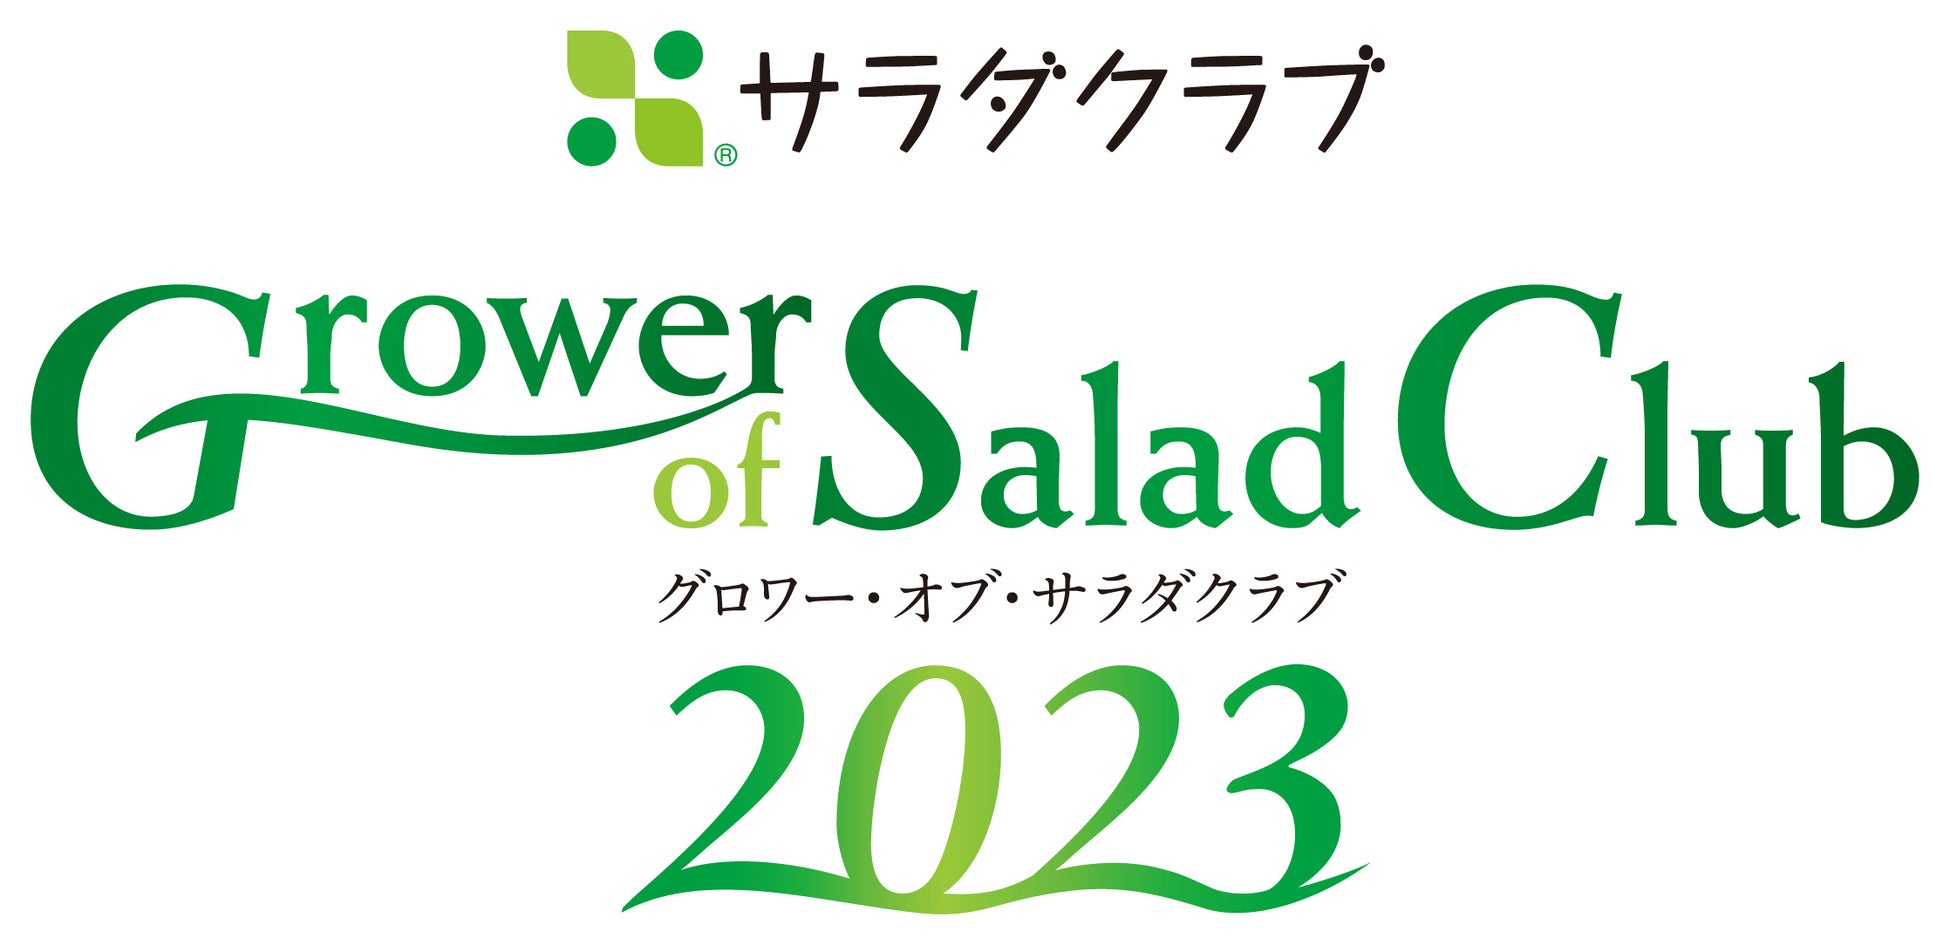 サラダクラブ産地表彰式を開催　第7回「Grower of Salad Club 2023」全国約400の契約産地の中から8産地を「最優秀賞」として表彰のサブ画像1